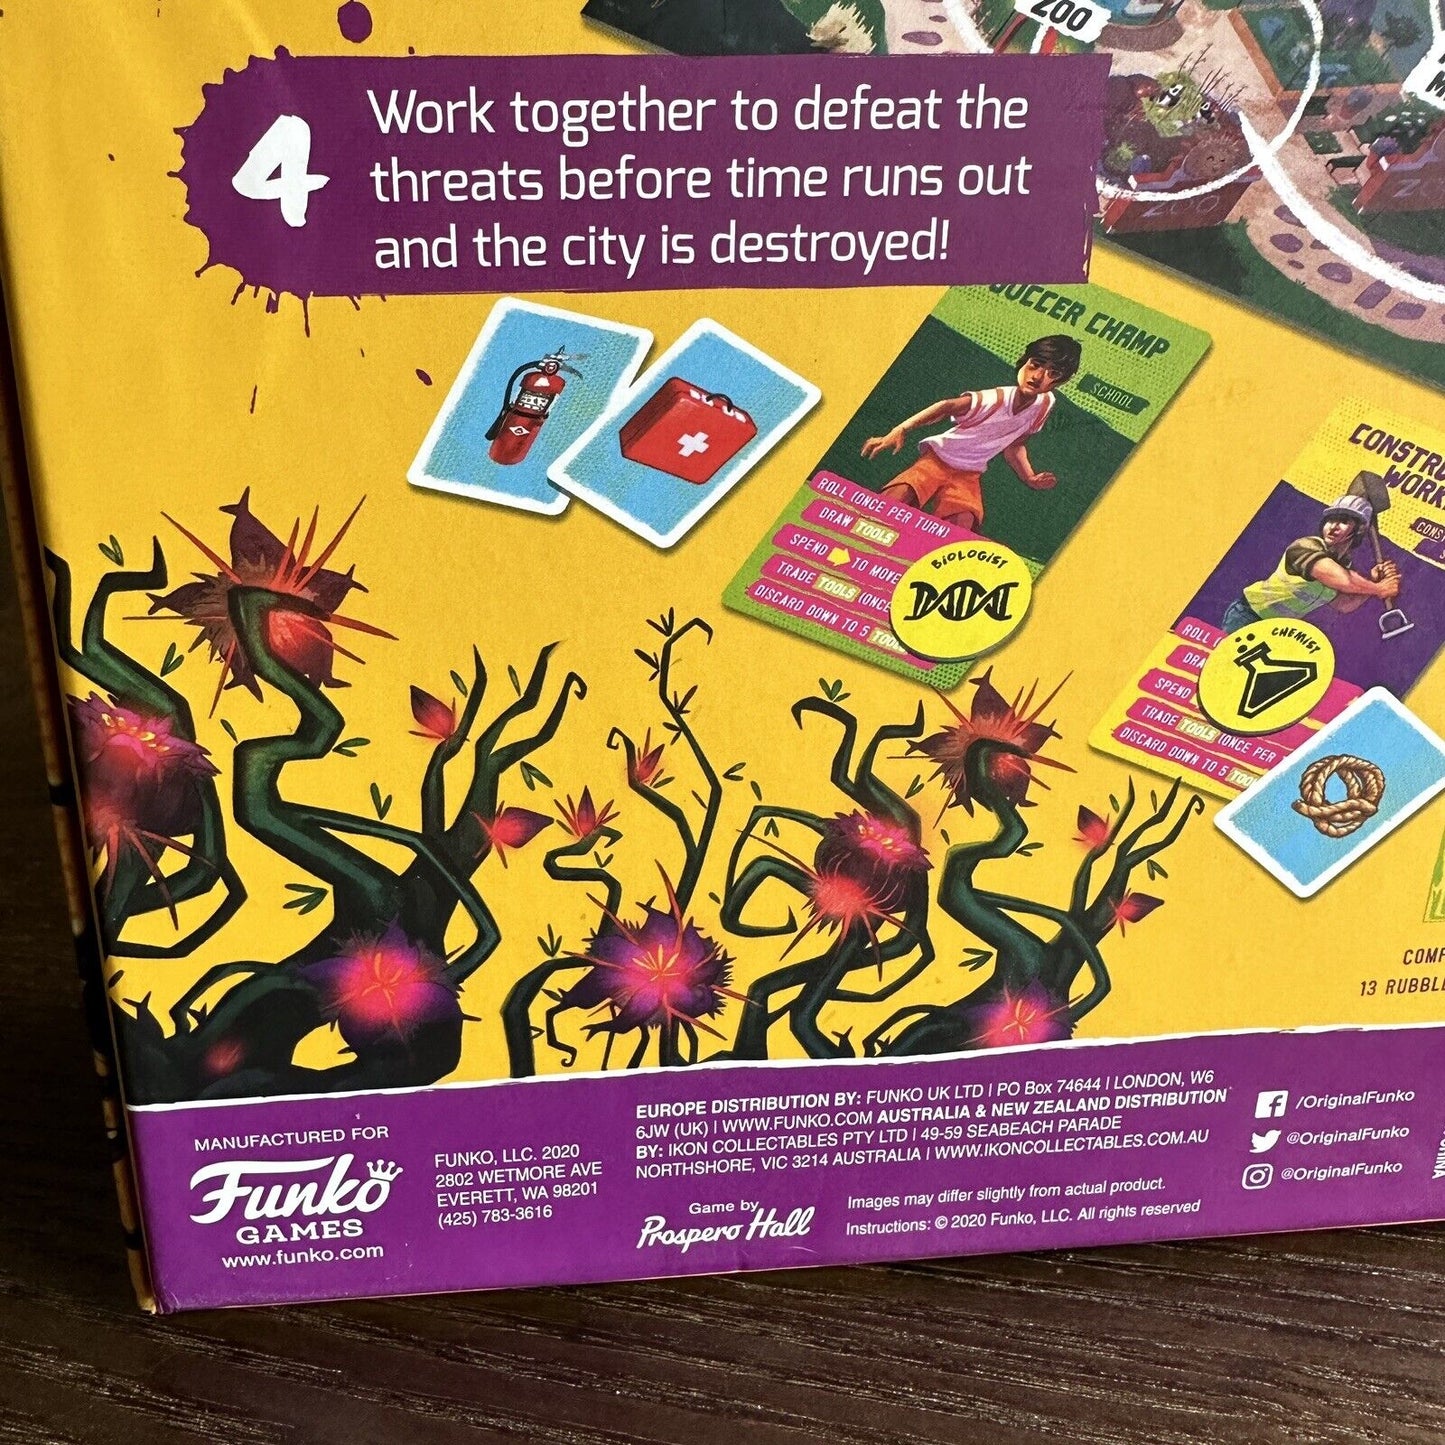 Funko Last Defense! Board Game Prospero Hall 2020 Family Cooperative 20 Mins App